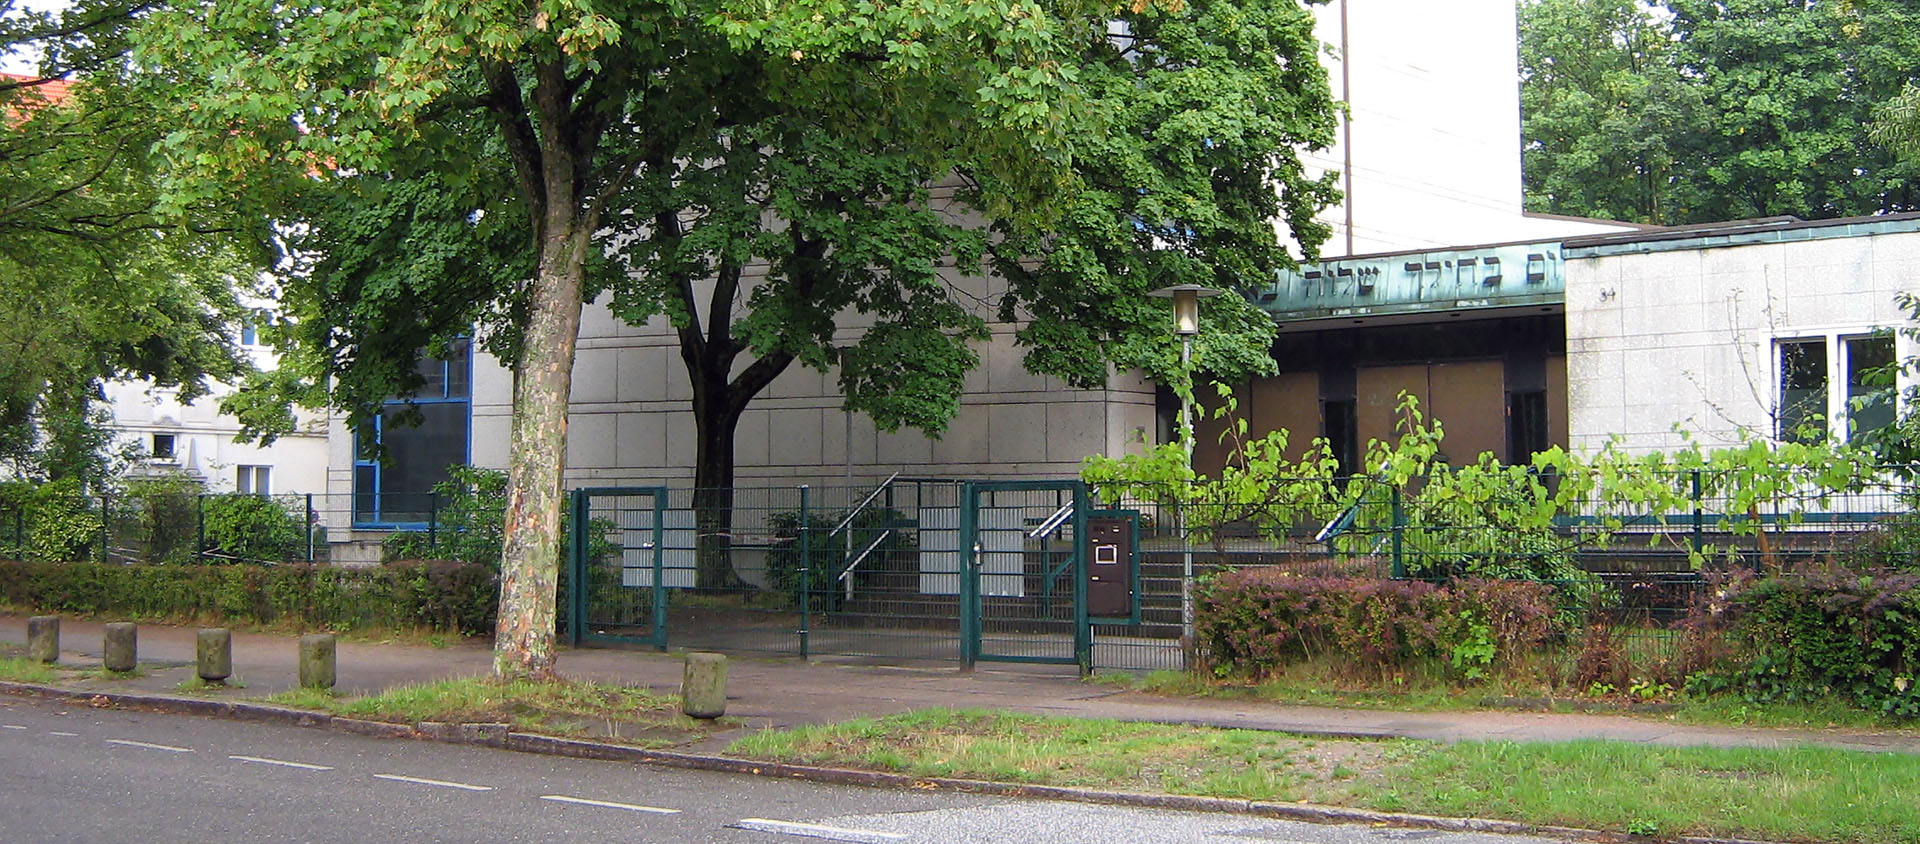 C'est en entrant dans la synagogue Hohe Weide, à Hambourg, que l'étudiant de 26 ans été attaqué à la tête à coups de pelle | © Wikimedia Commons/Catrin/CC BY-SA 3.0